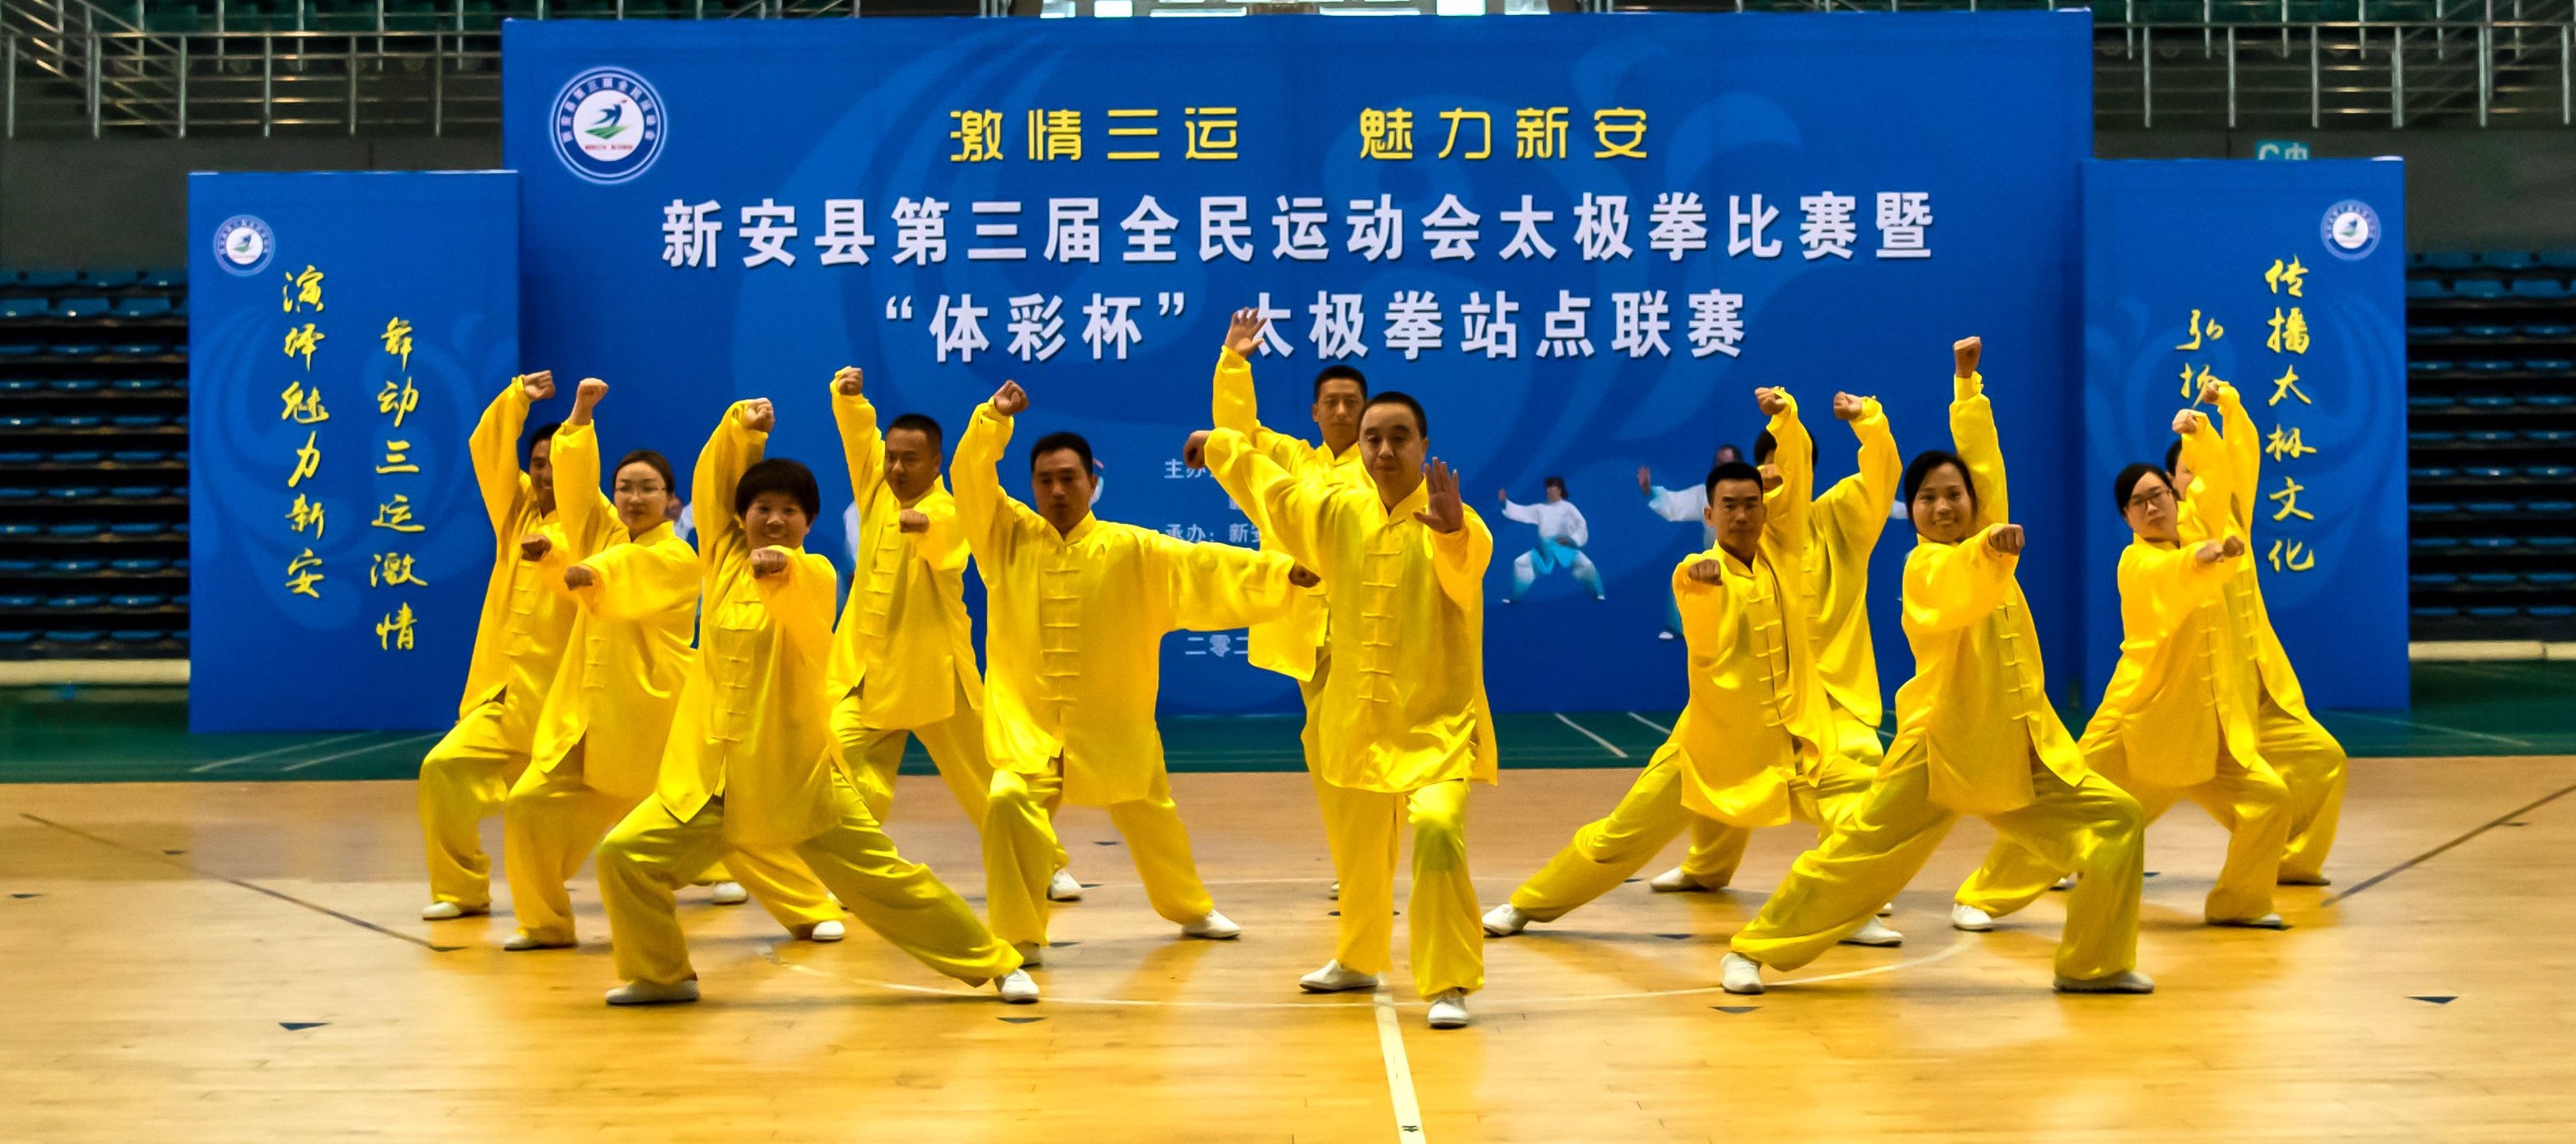 新安县第三届全民运动会太极拳比赛结束